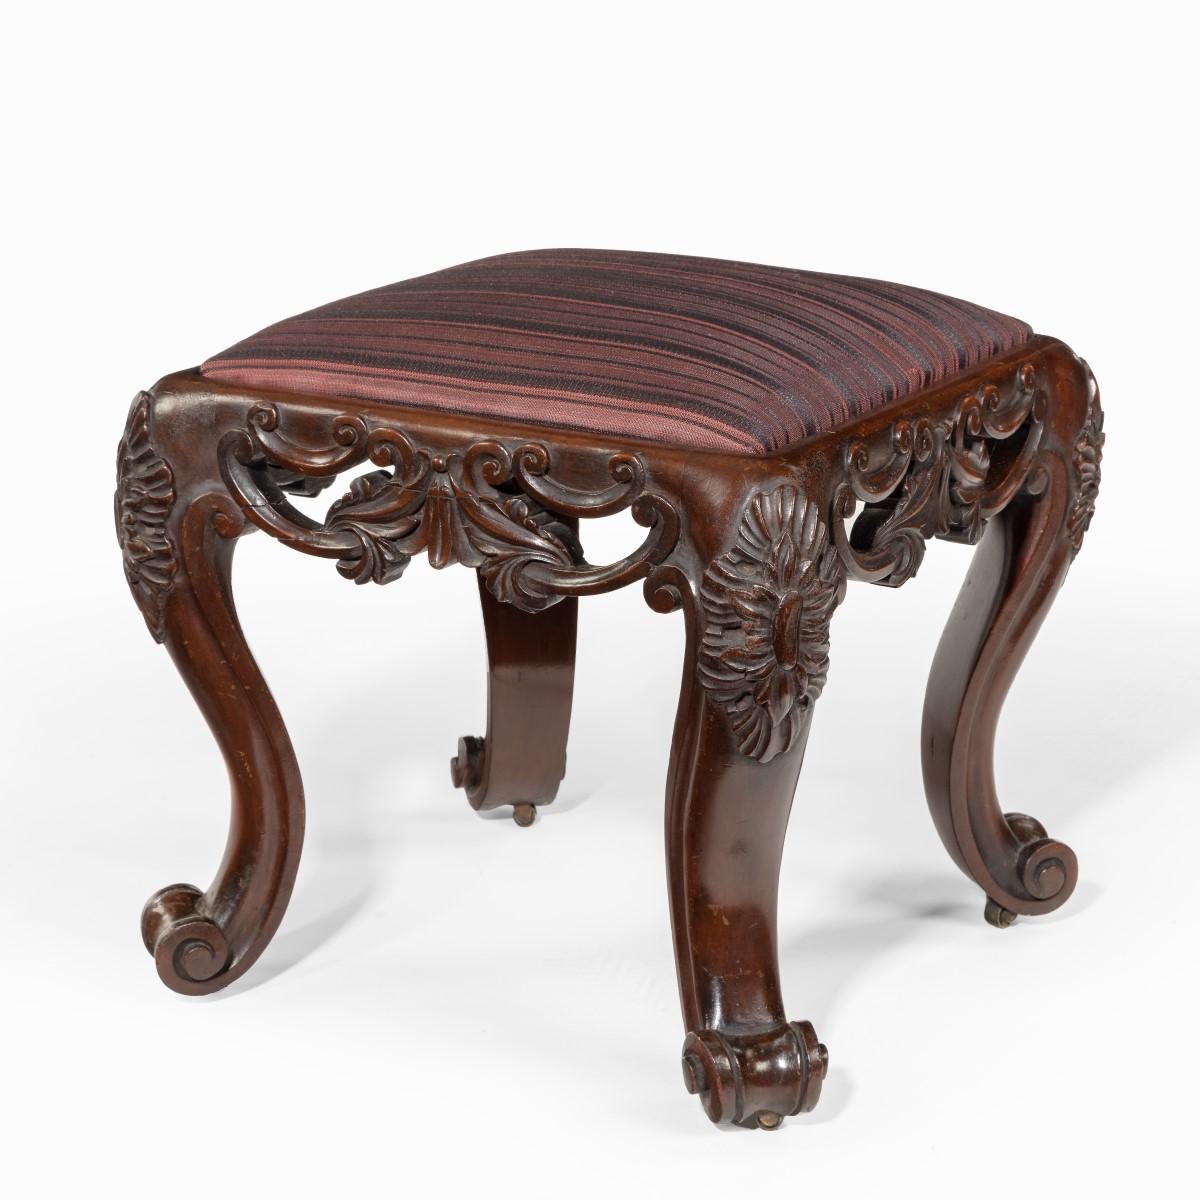 Victorian carved mahogany stools